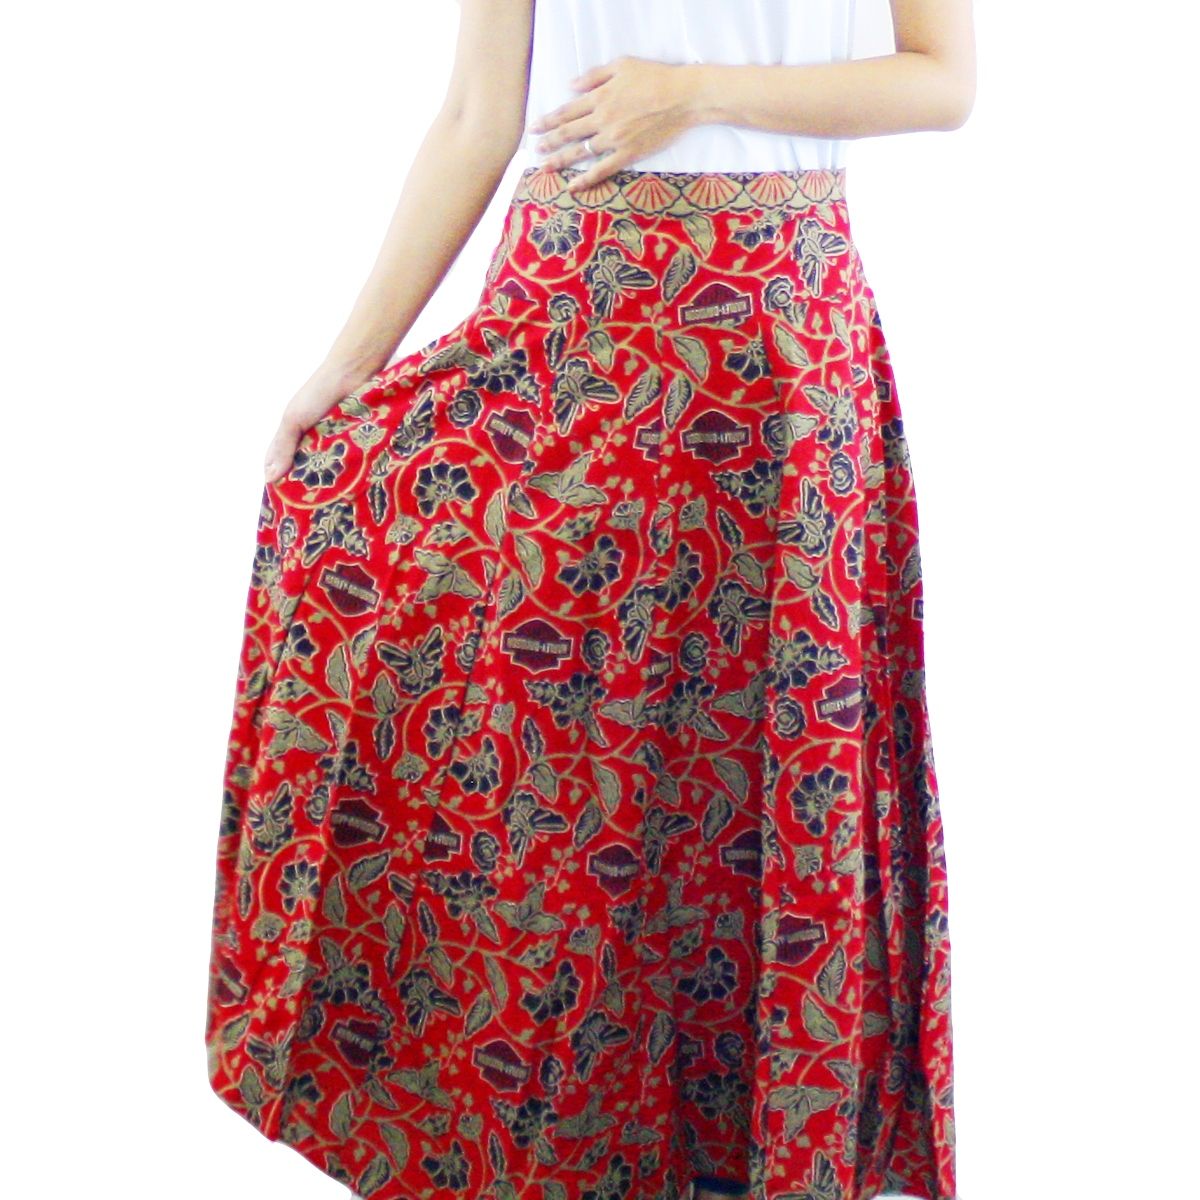  32 model rok  batik  panjang  pendek modern  untuk pesta 